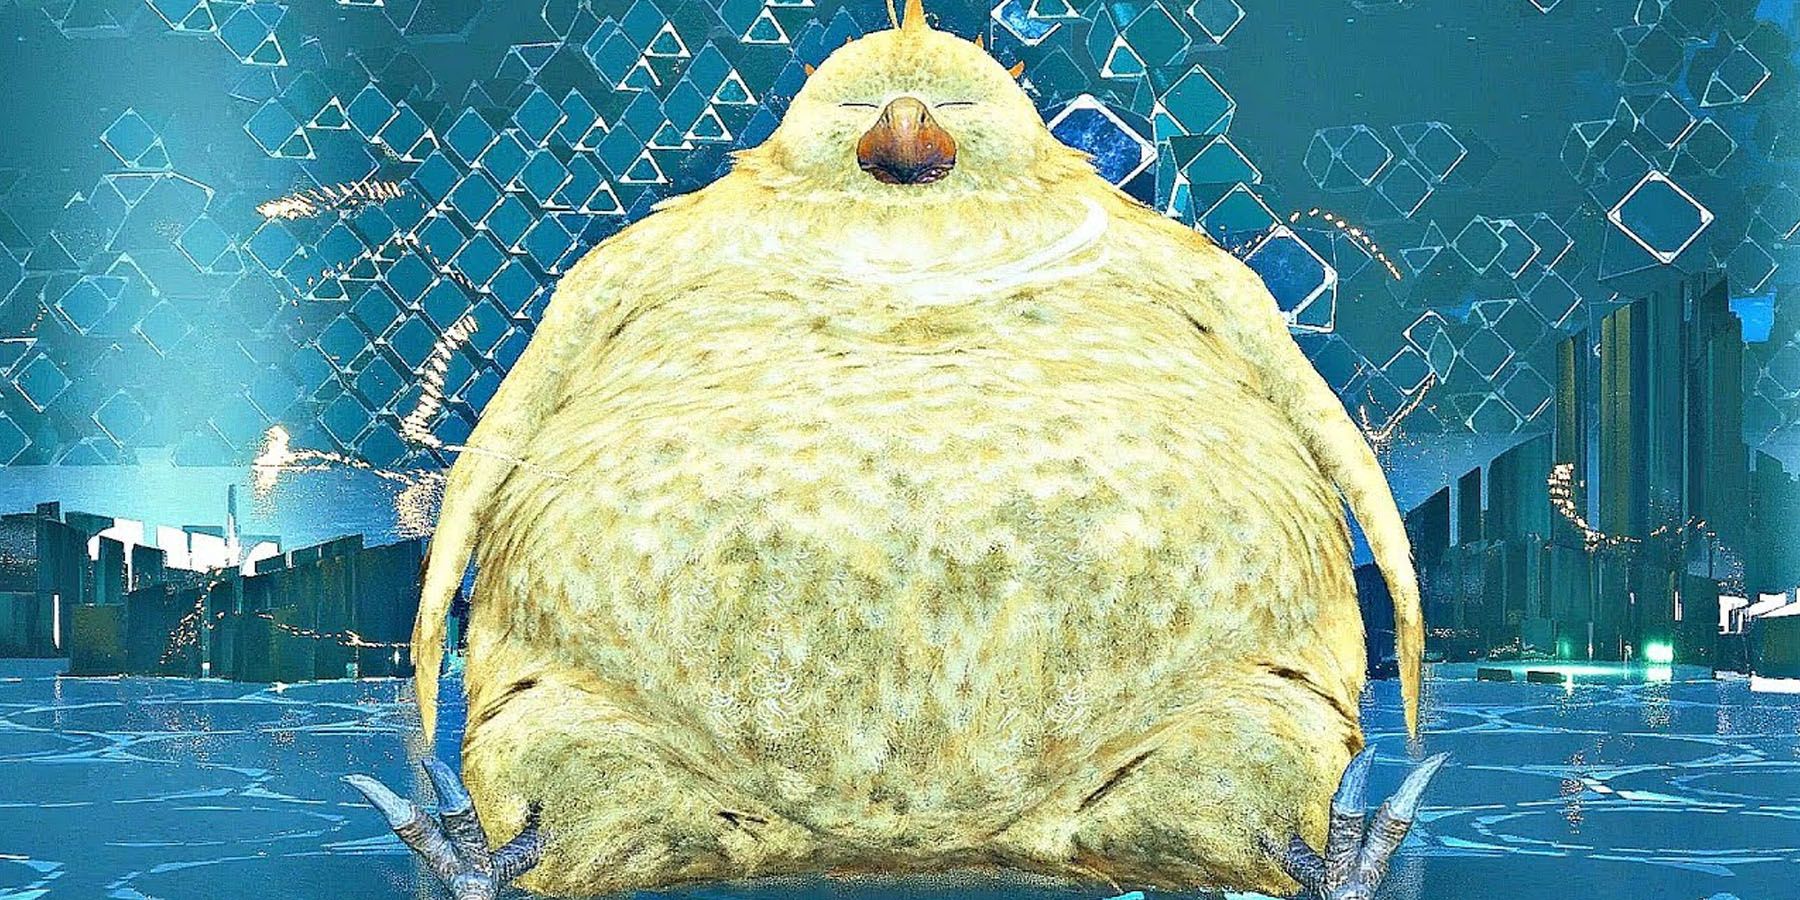 Fat Chocobo